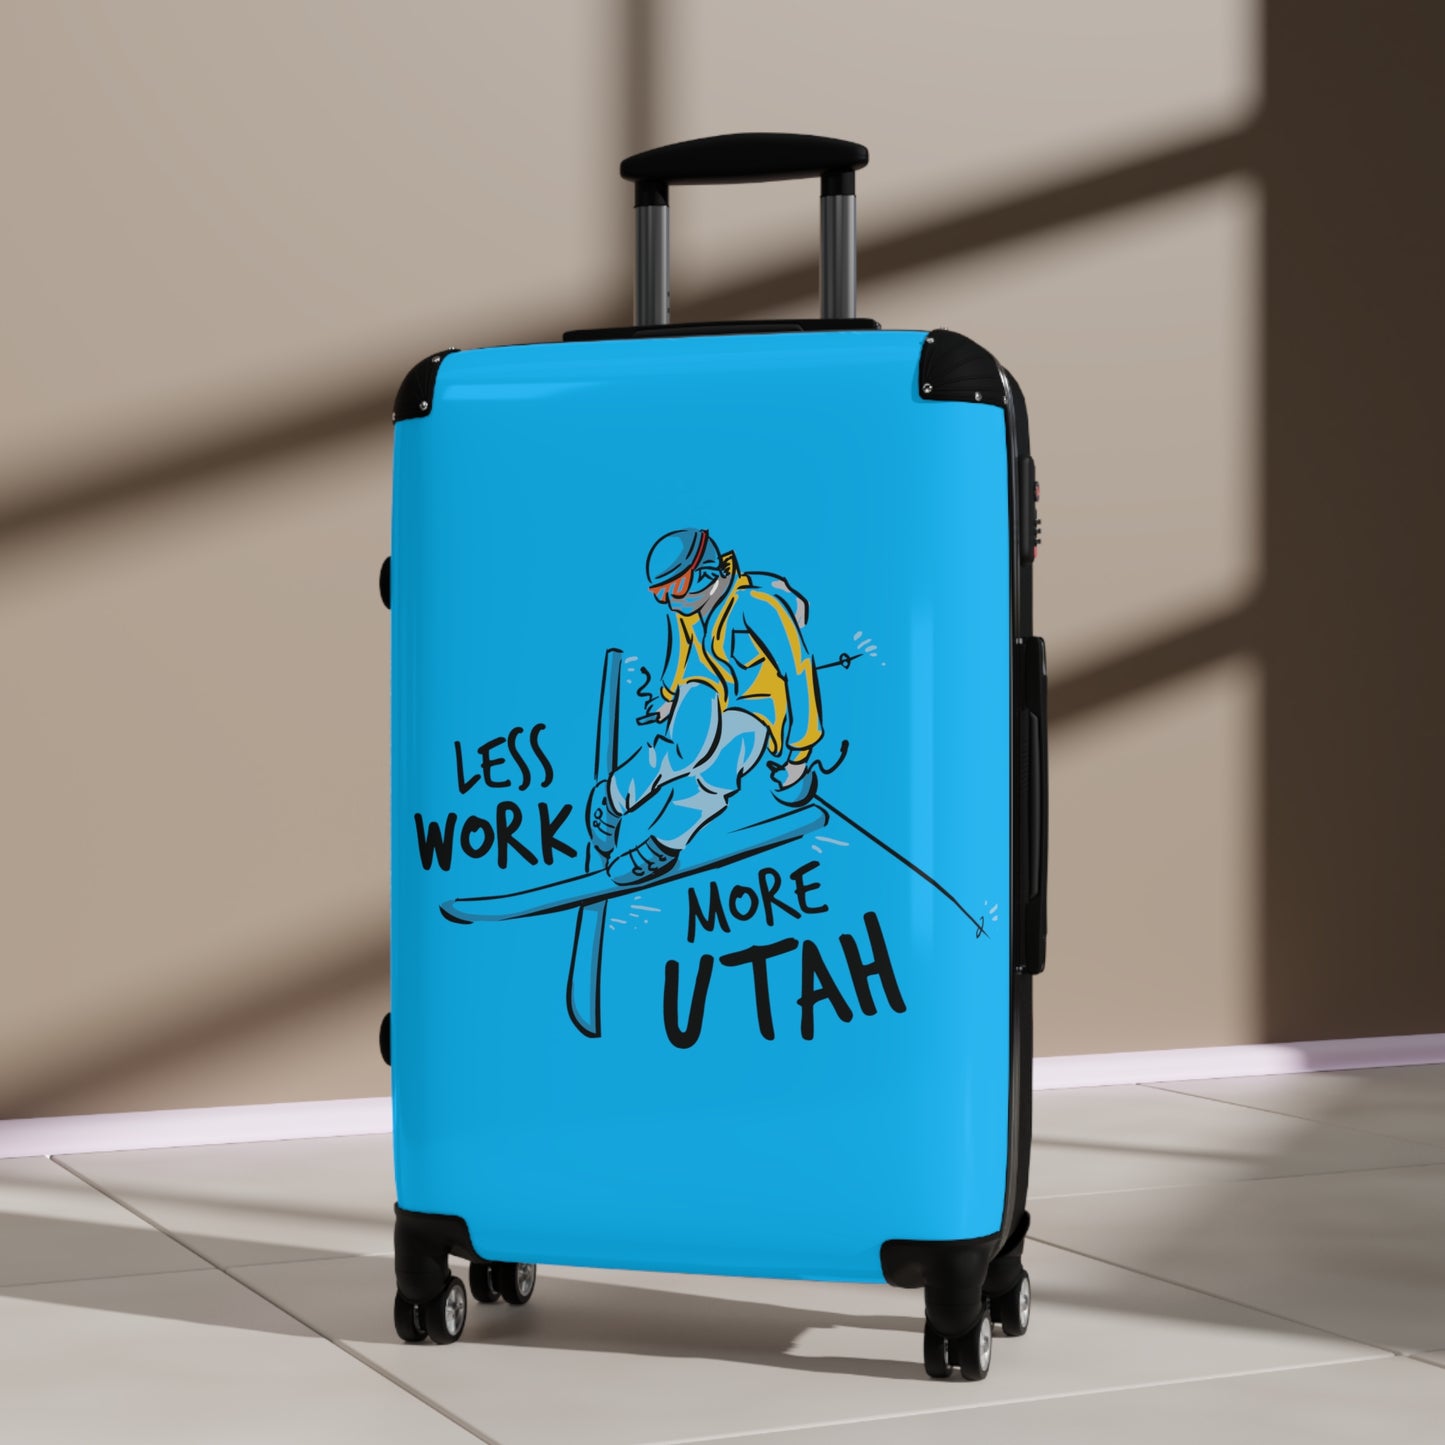 Less Work More Utah Custom Luggage